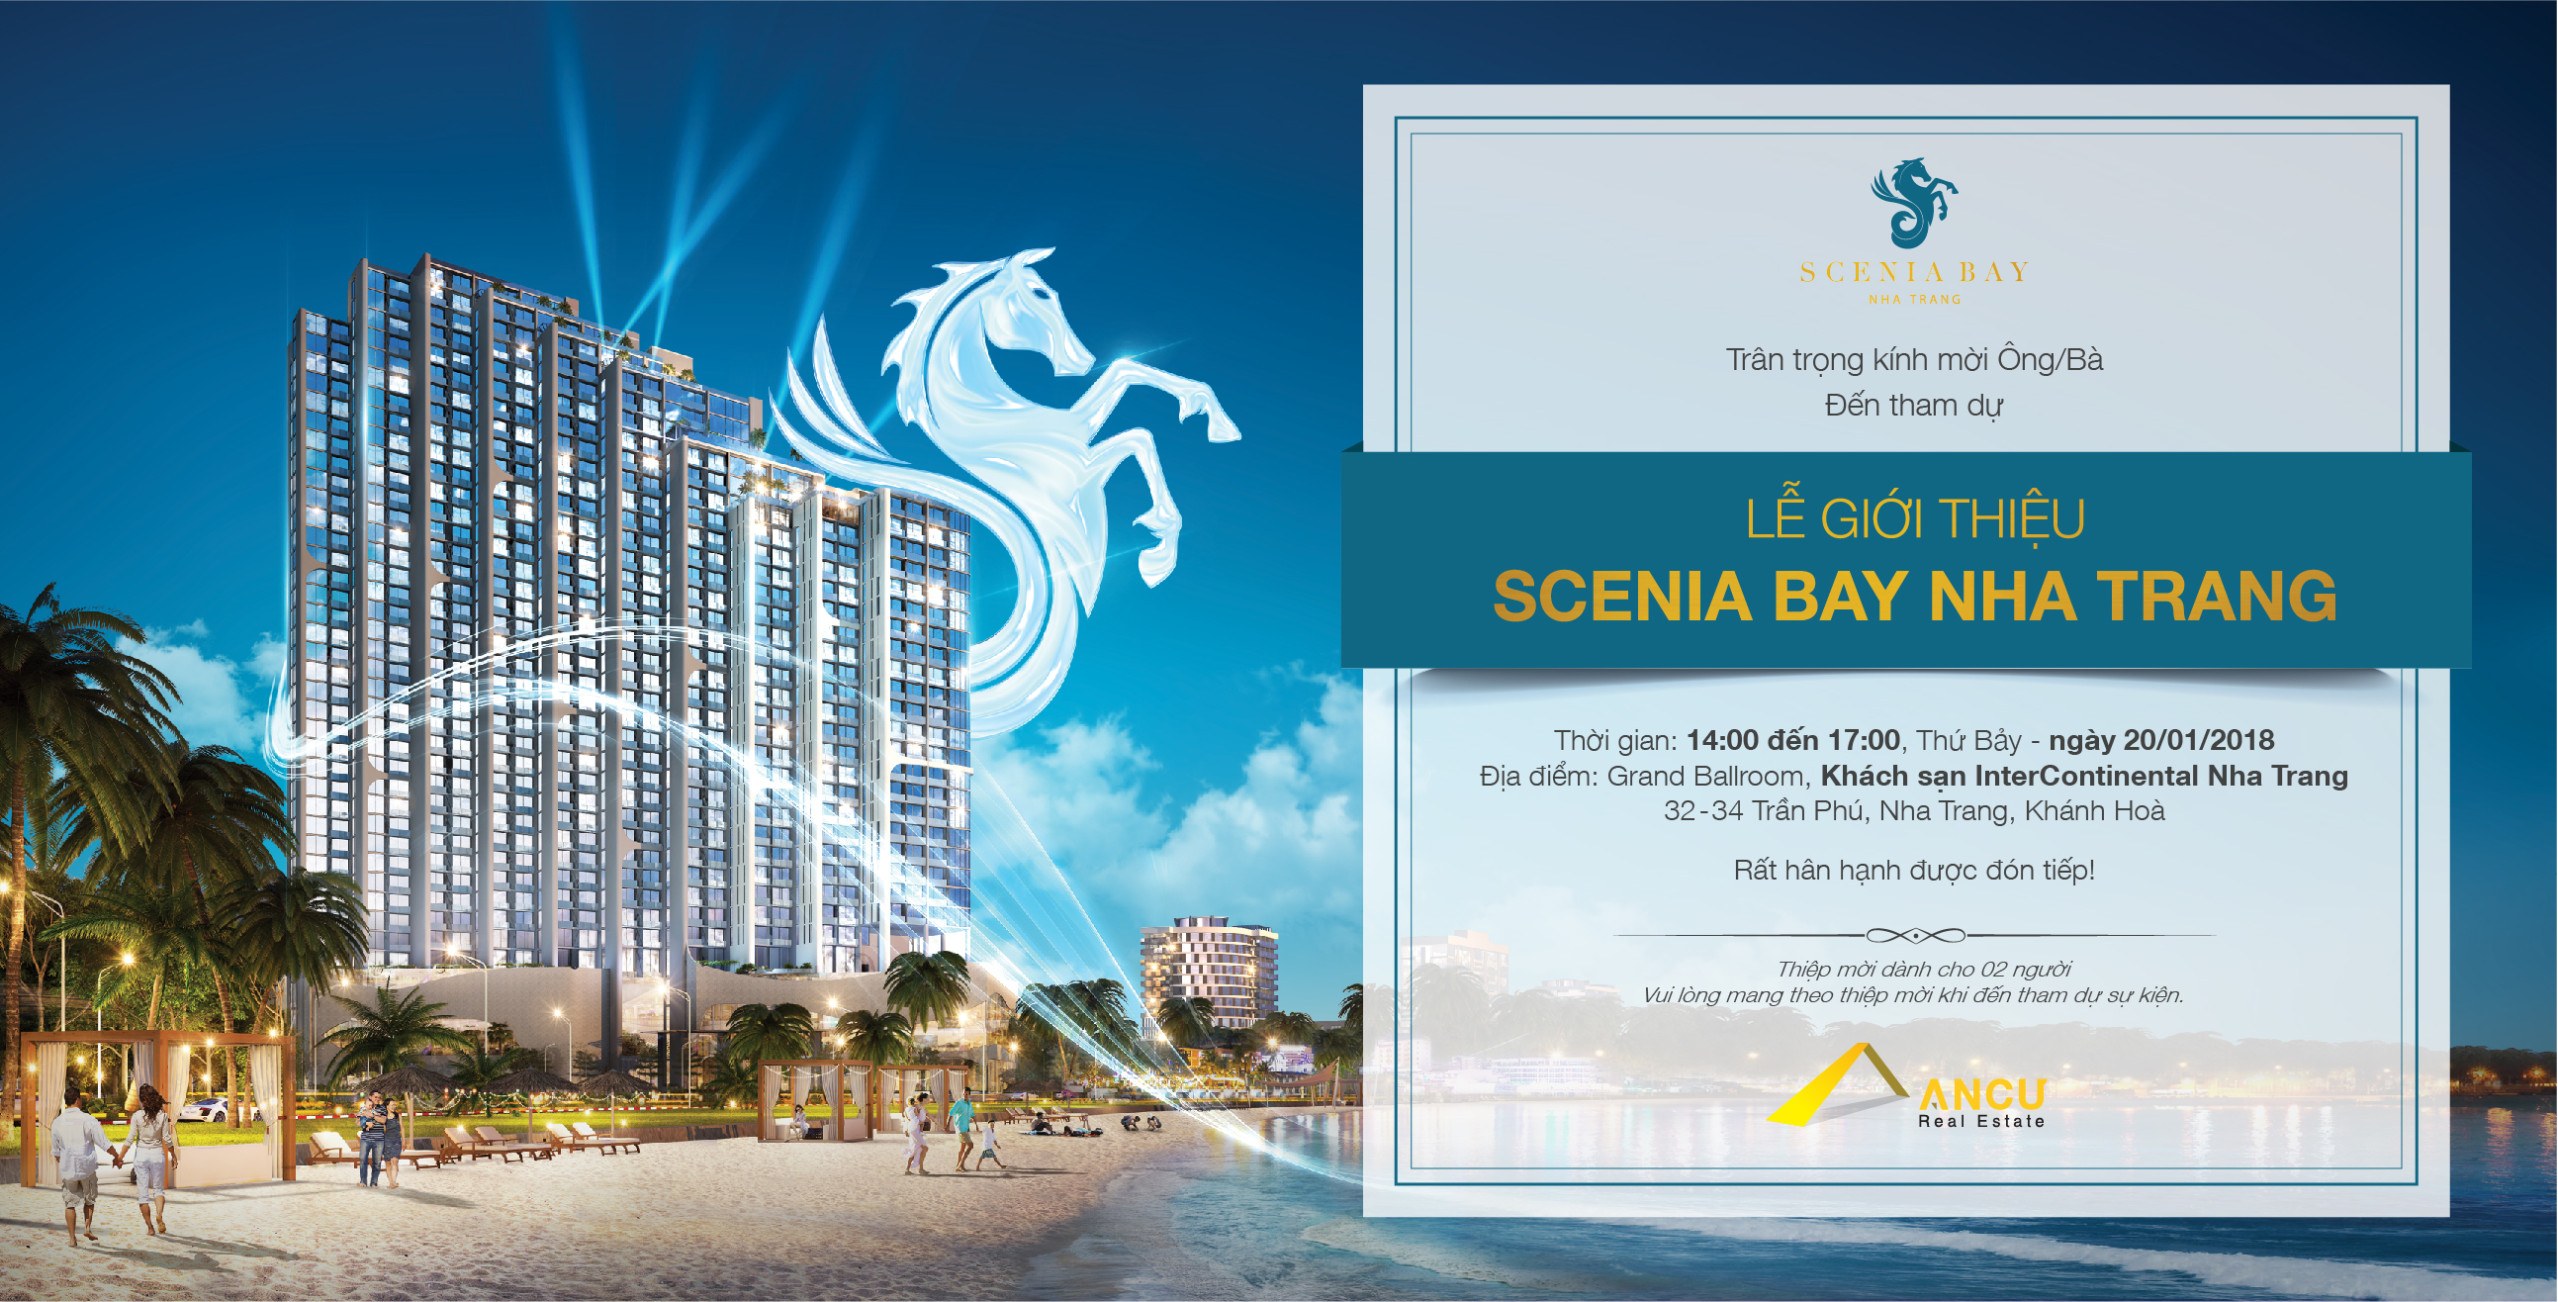 Sự kiện Scenia Bay Nha Trang ngày 20 - 01 - 2018